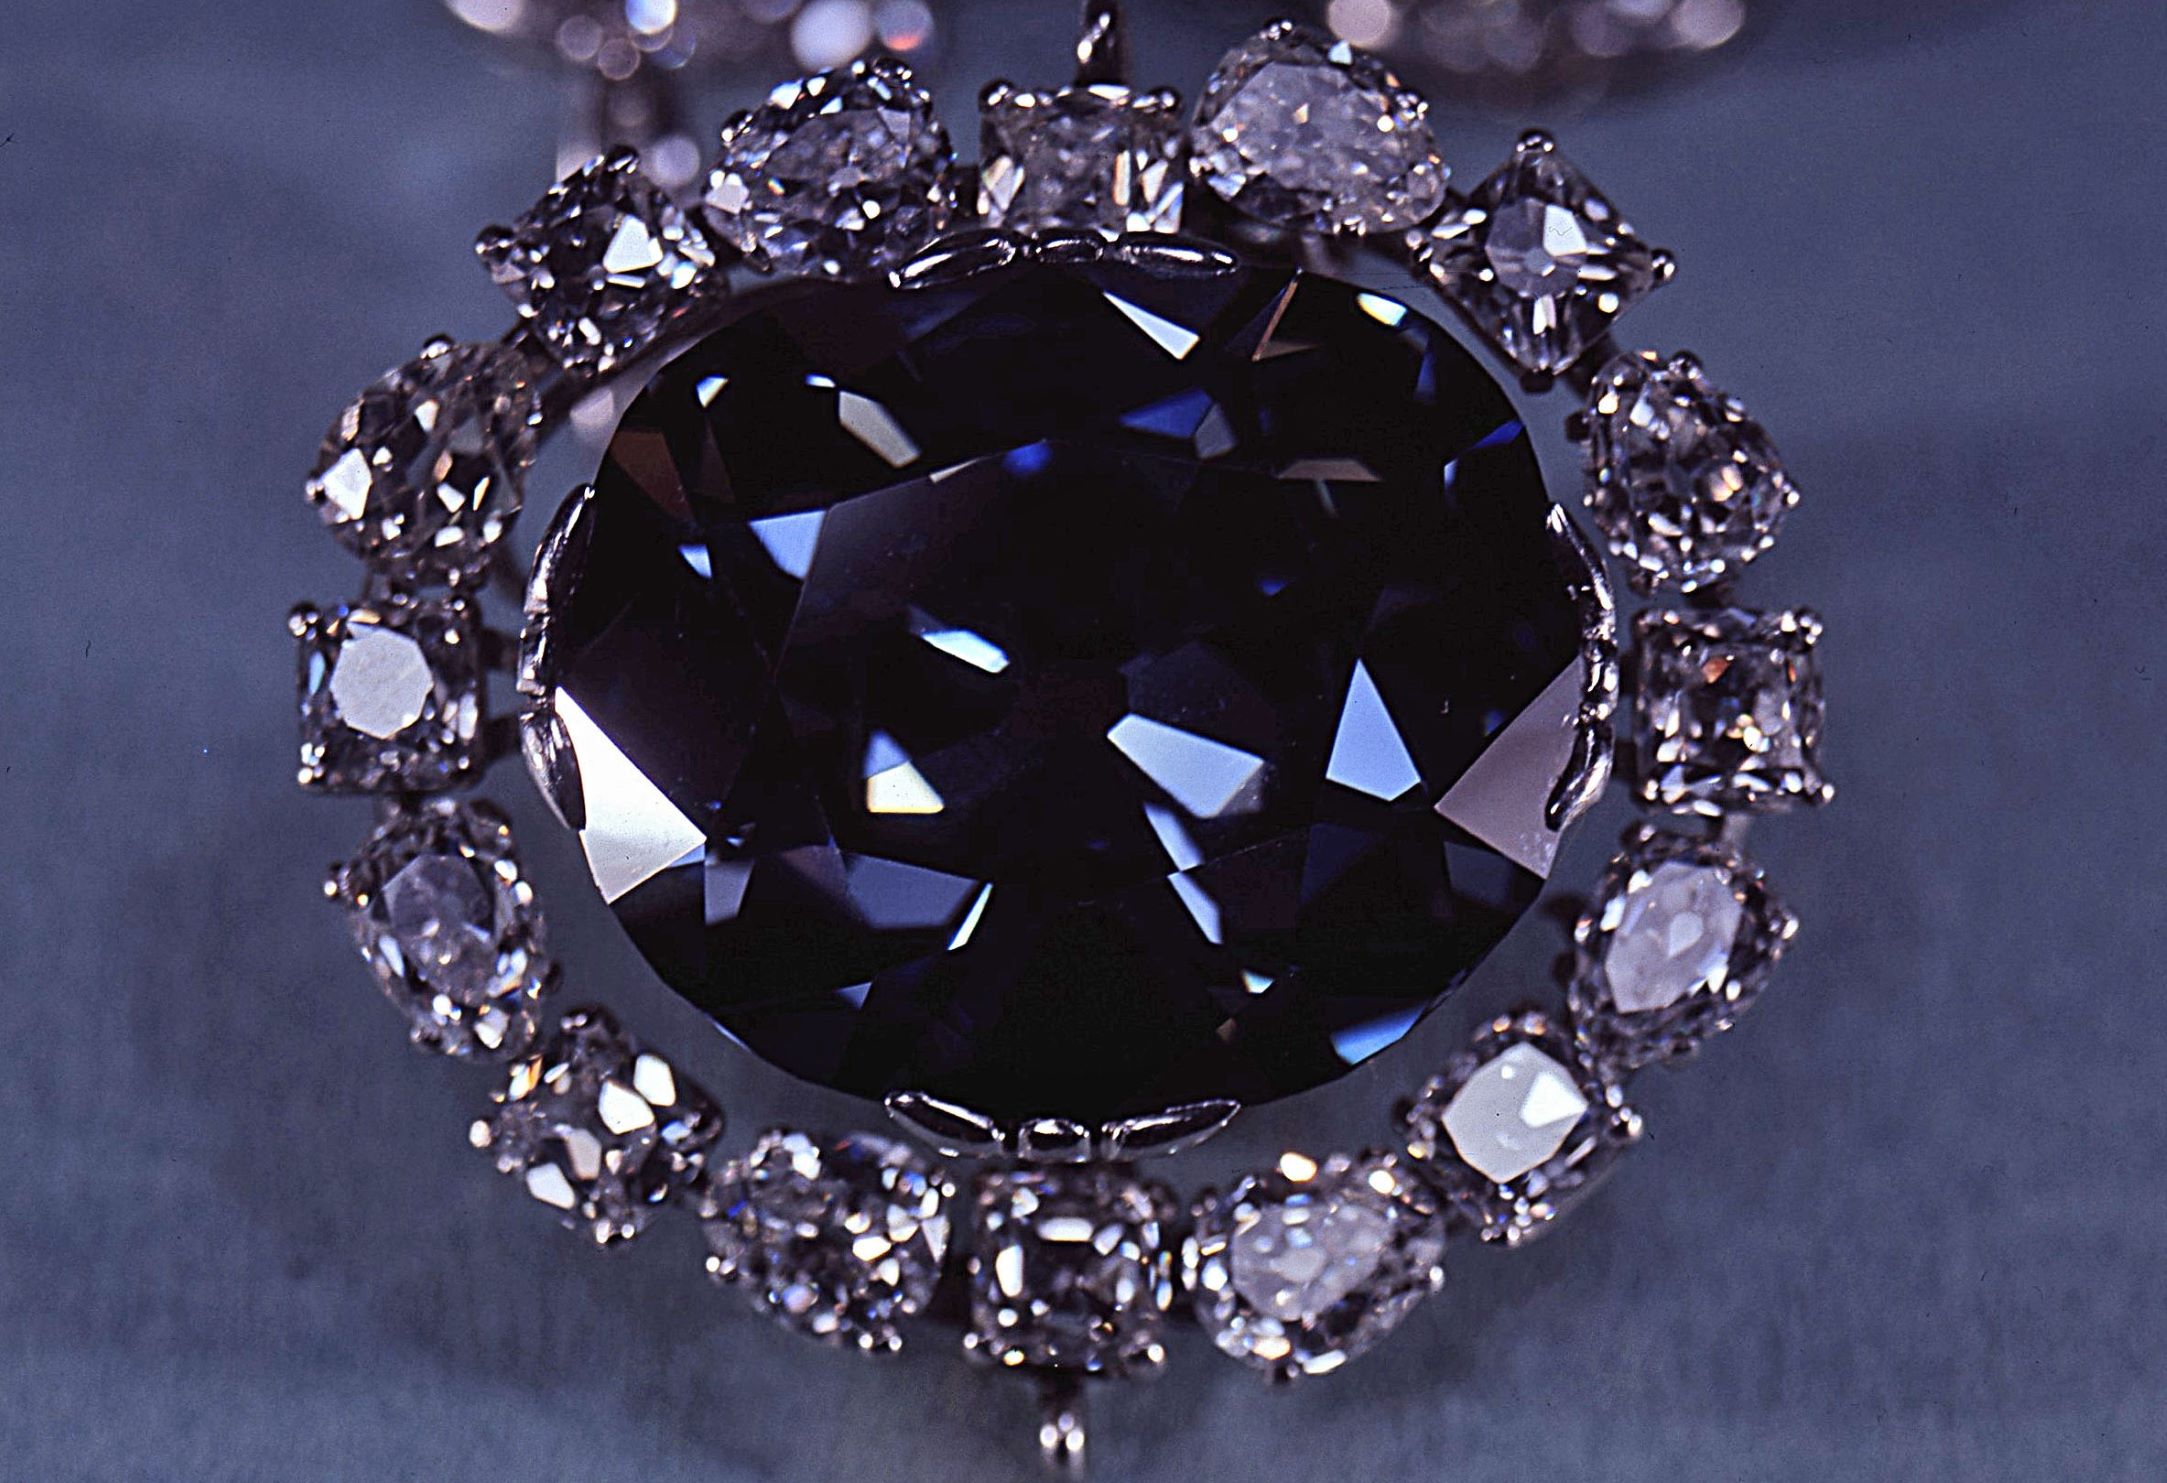 Les scientifiques ont peut-être identifié la véritable origine des diamants les plus rares au monde, dont le célèbre diamant Hope